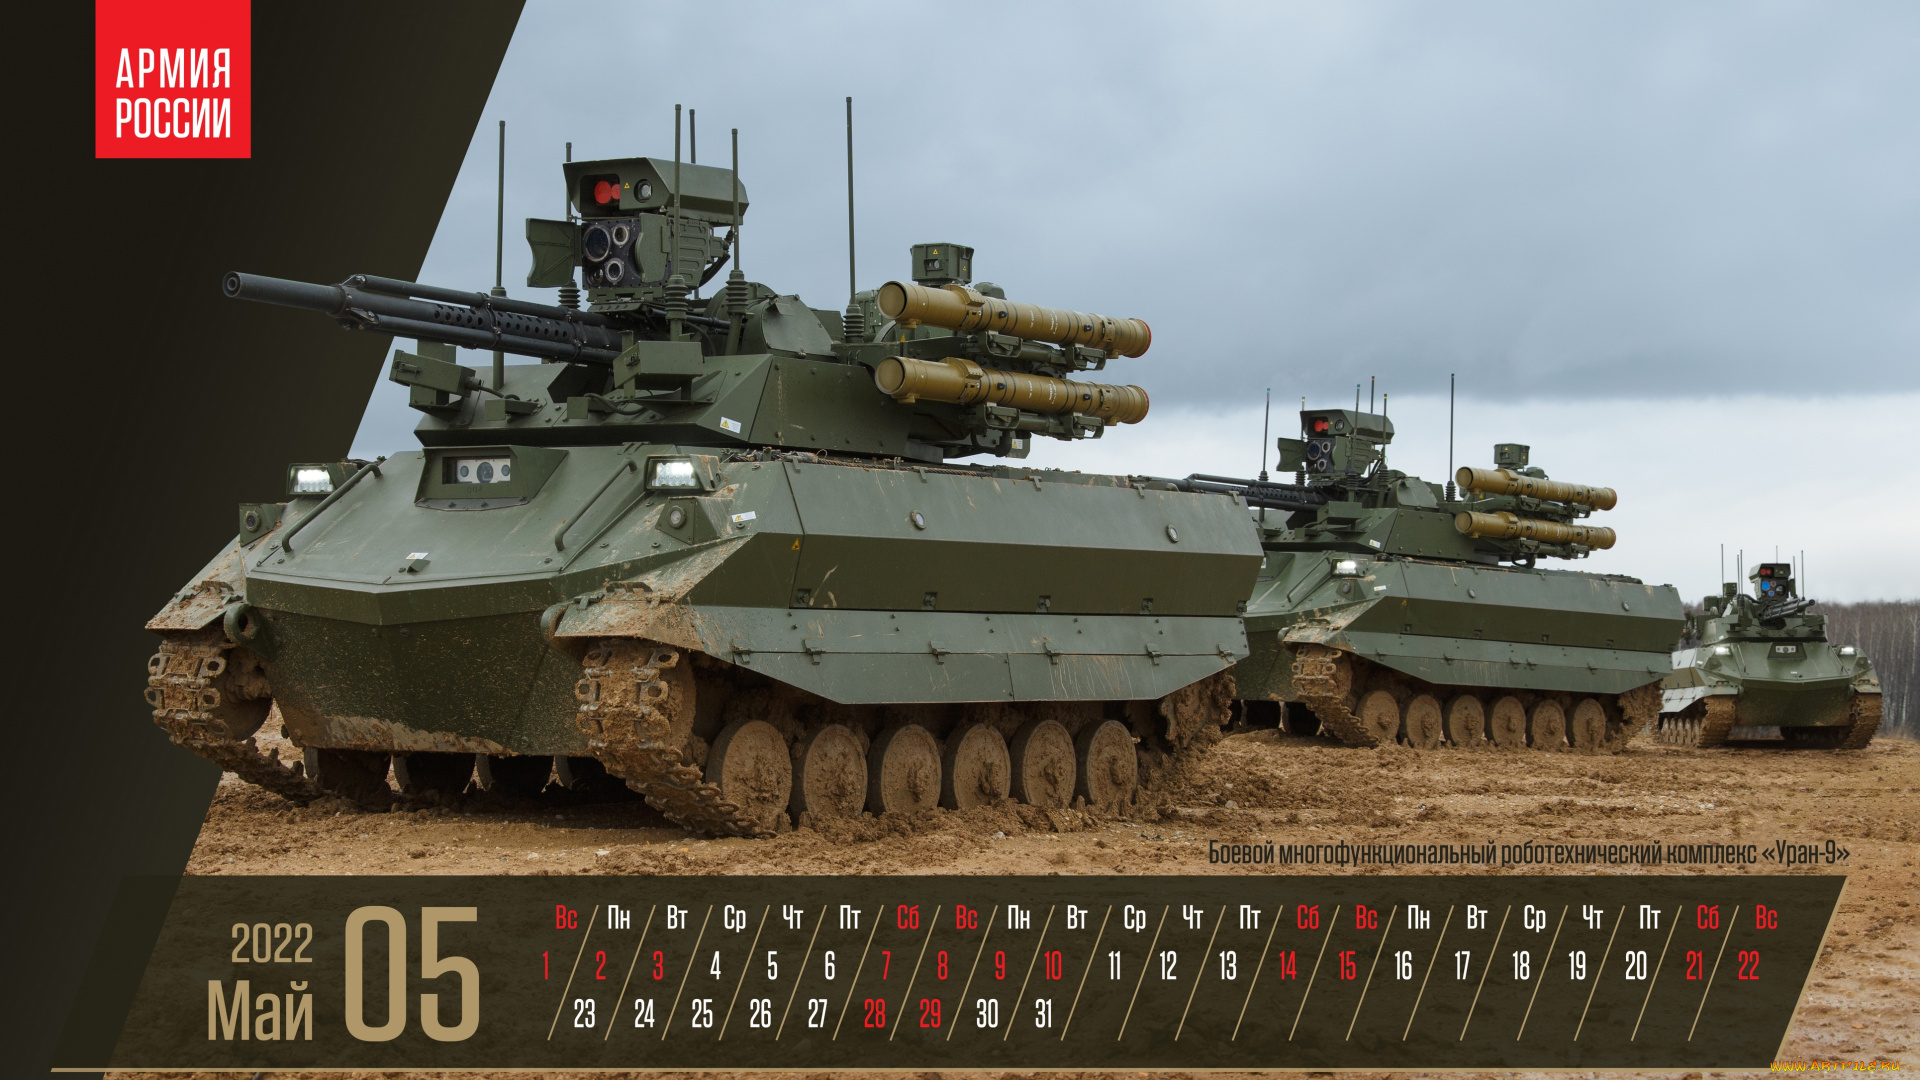 календари, оружие, май, боевой, многофункциональный, робототехнический, комлекс, уран9, армия, россии